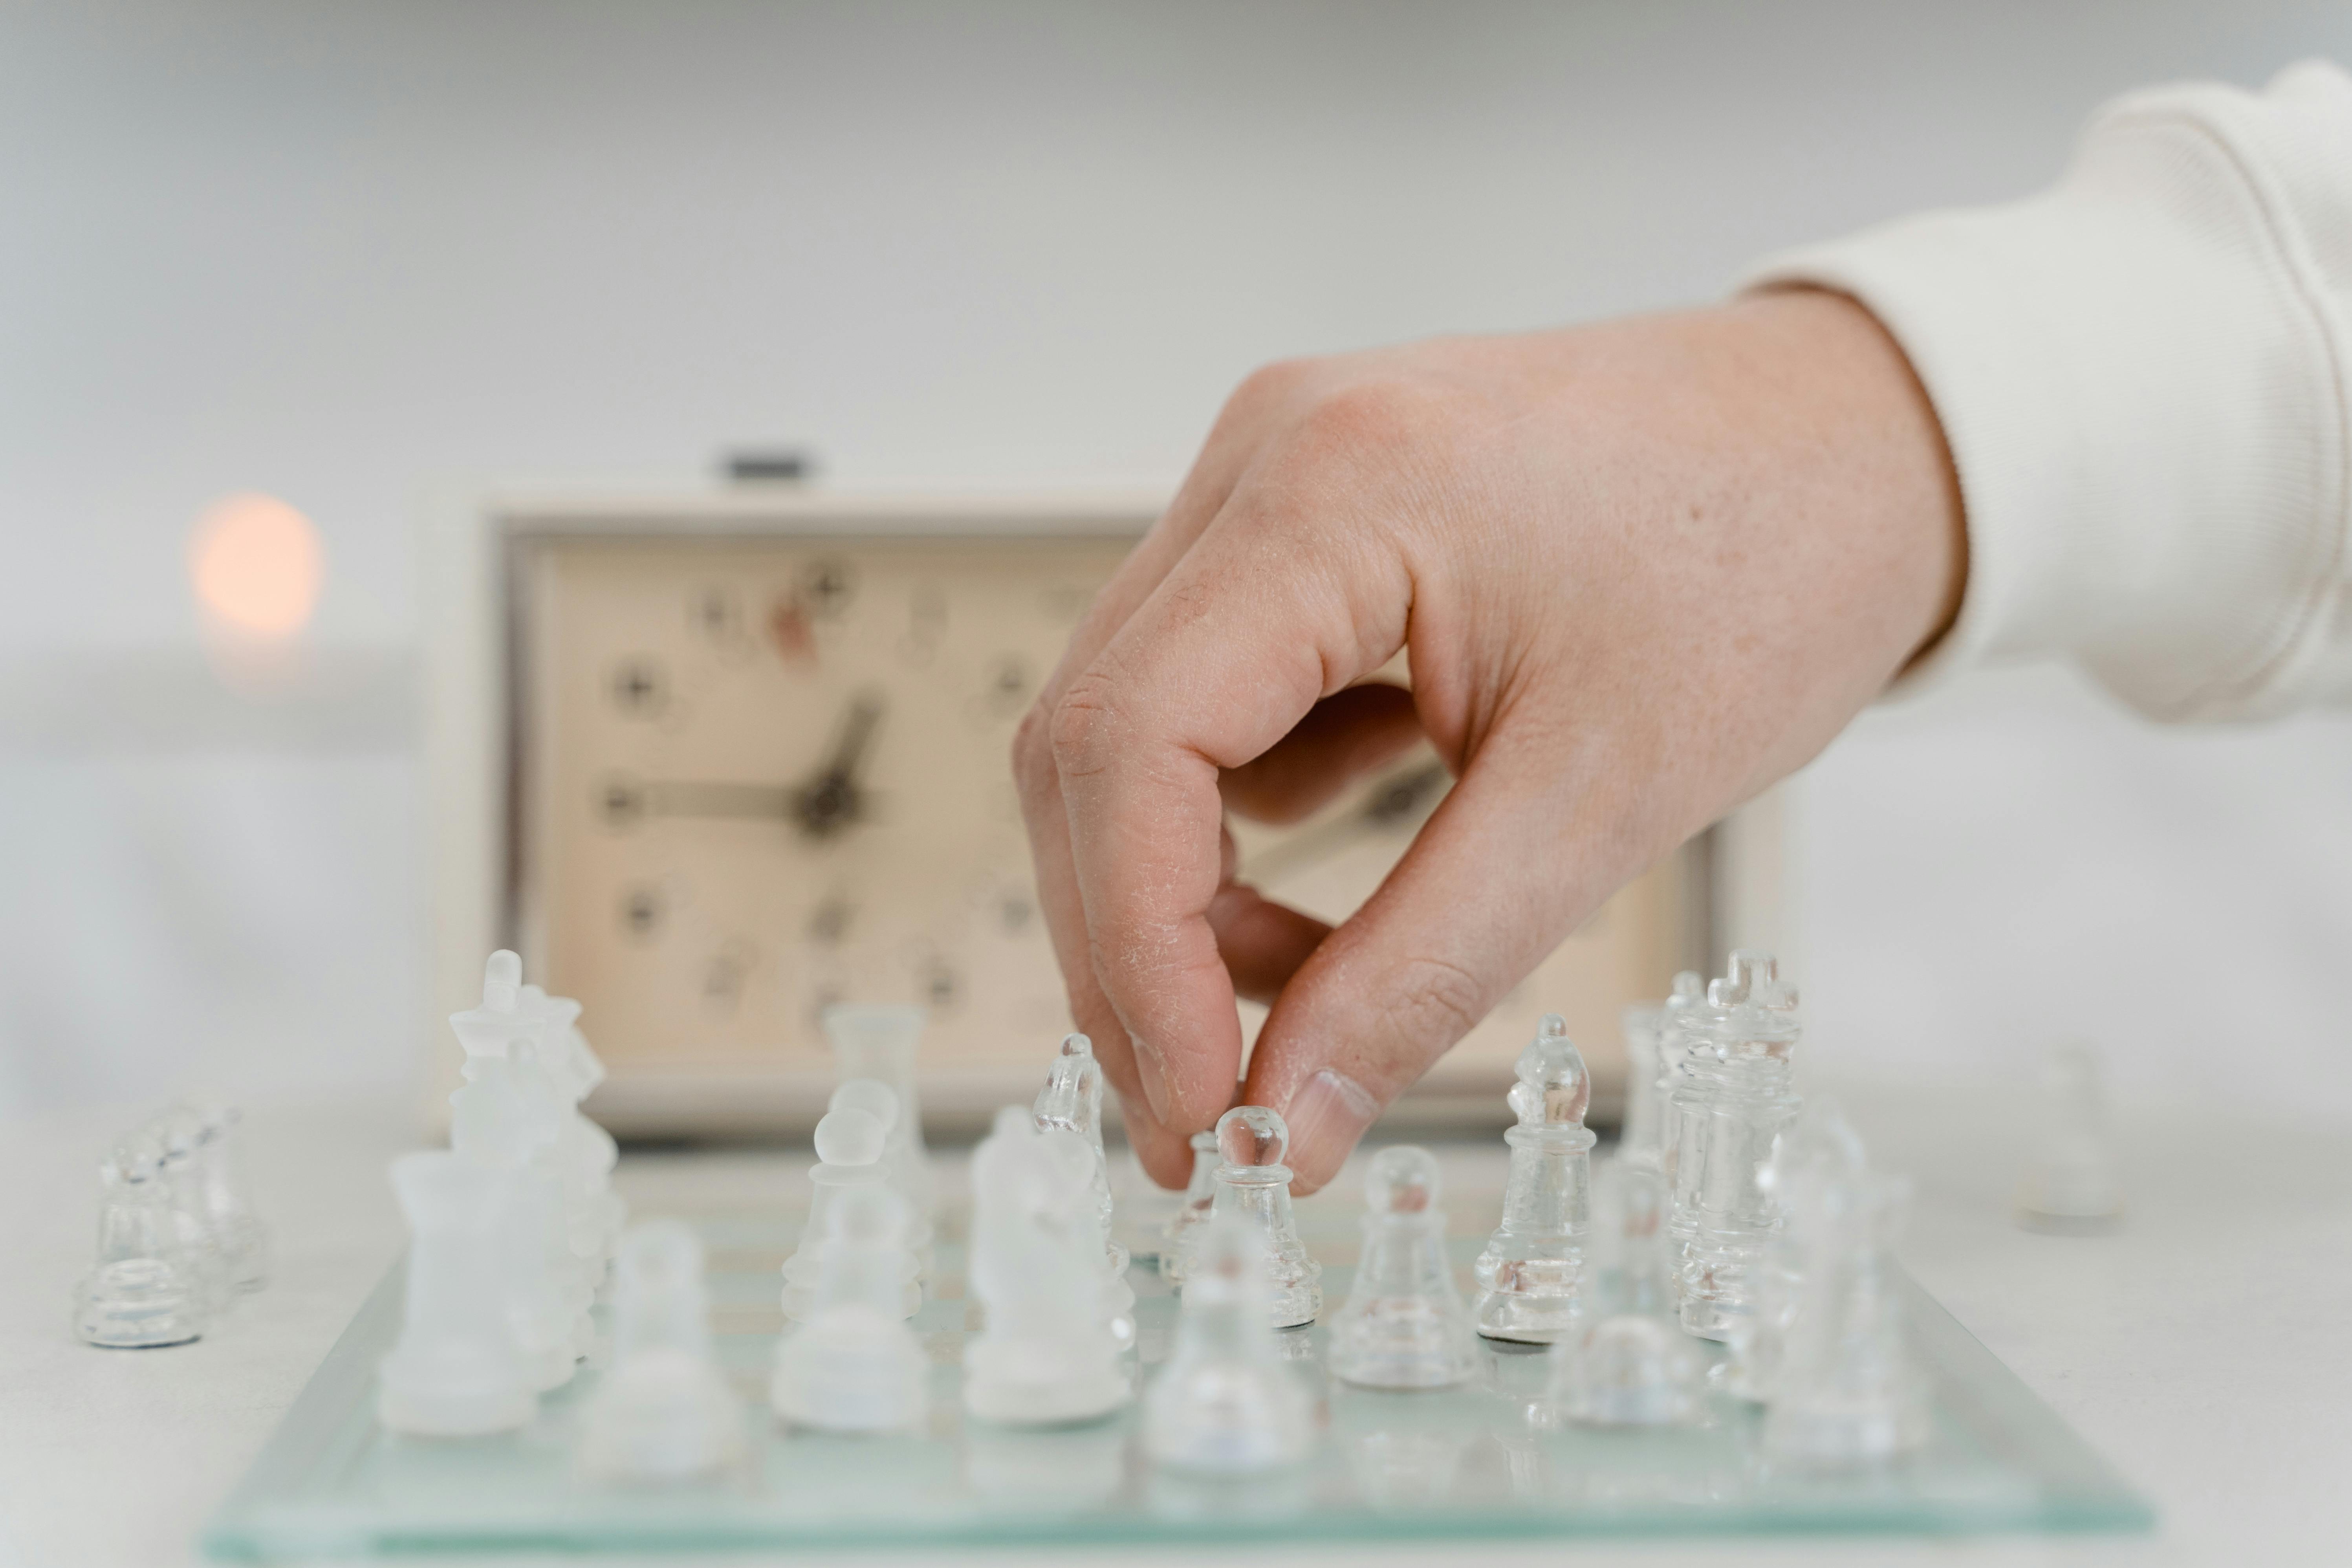 Imagens de Chess Pieces Glass – Explore Fotografias do Stock, Vetores e  Vídeos de 16,388